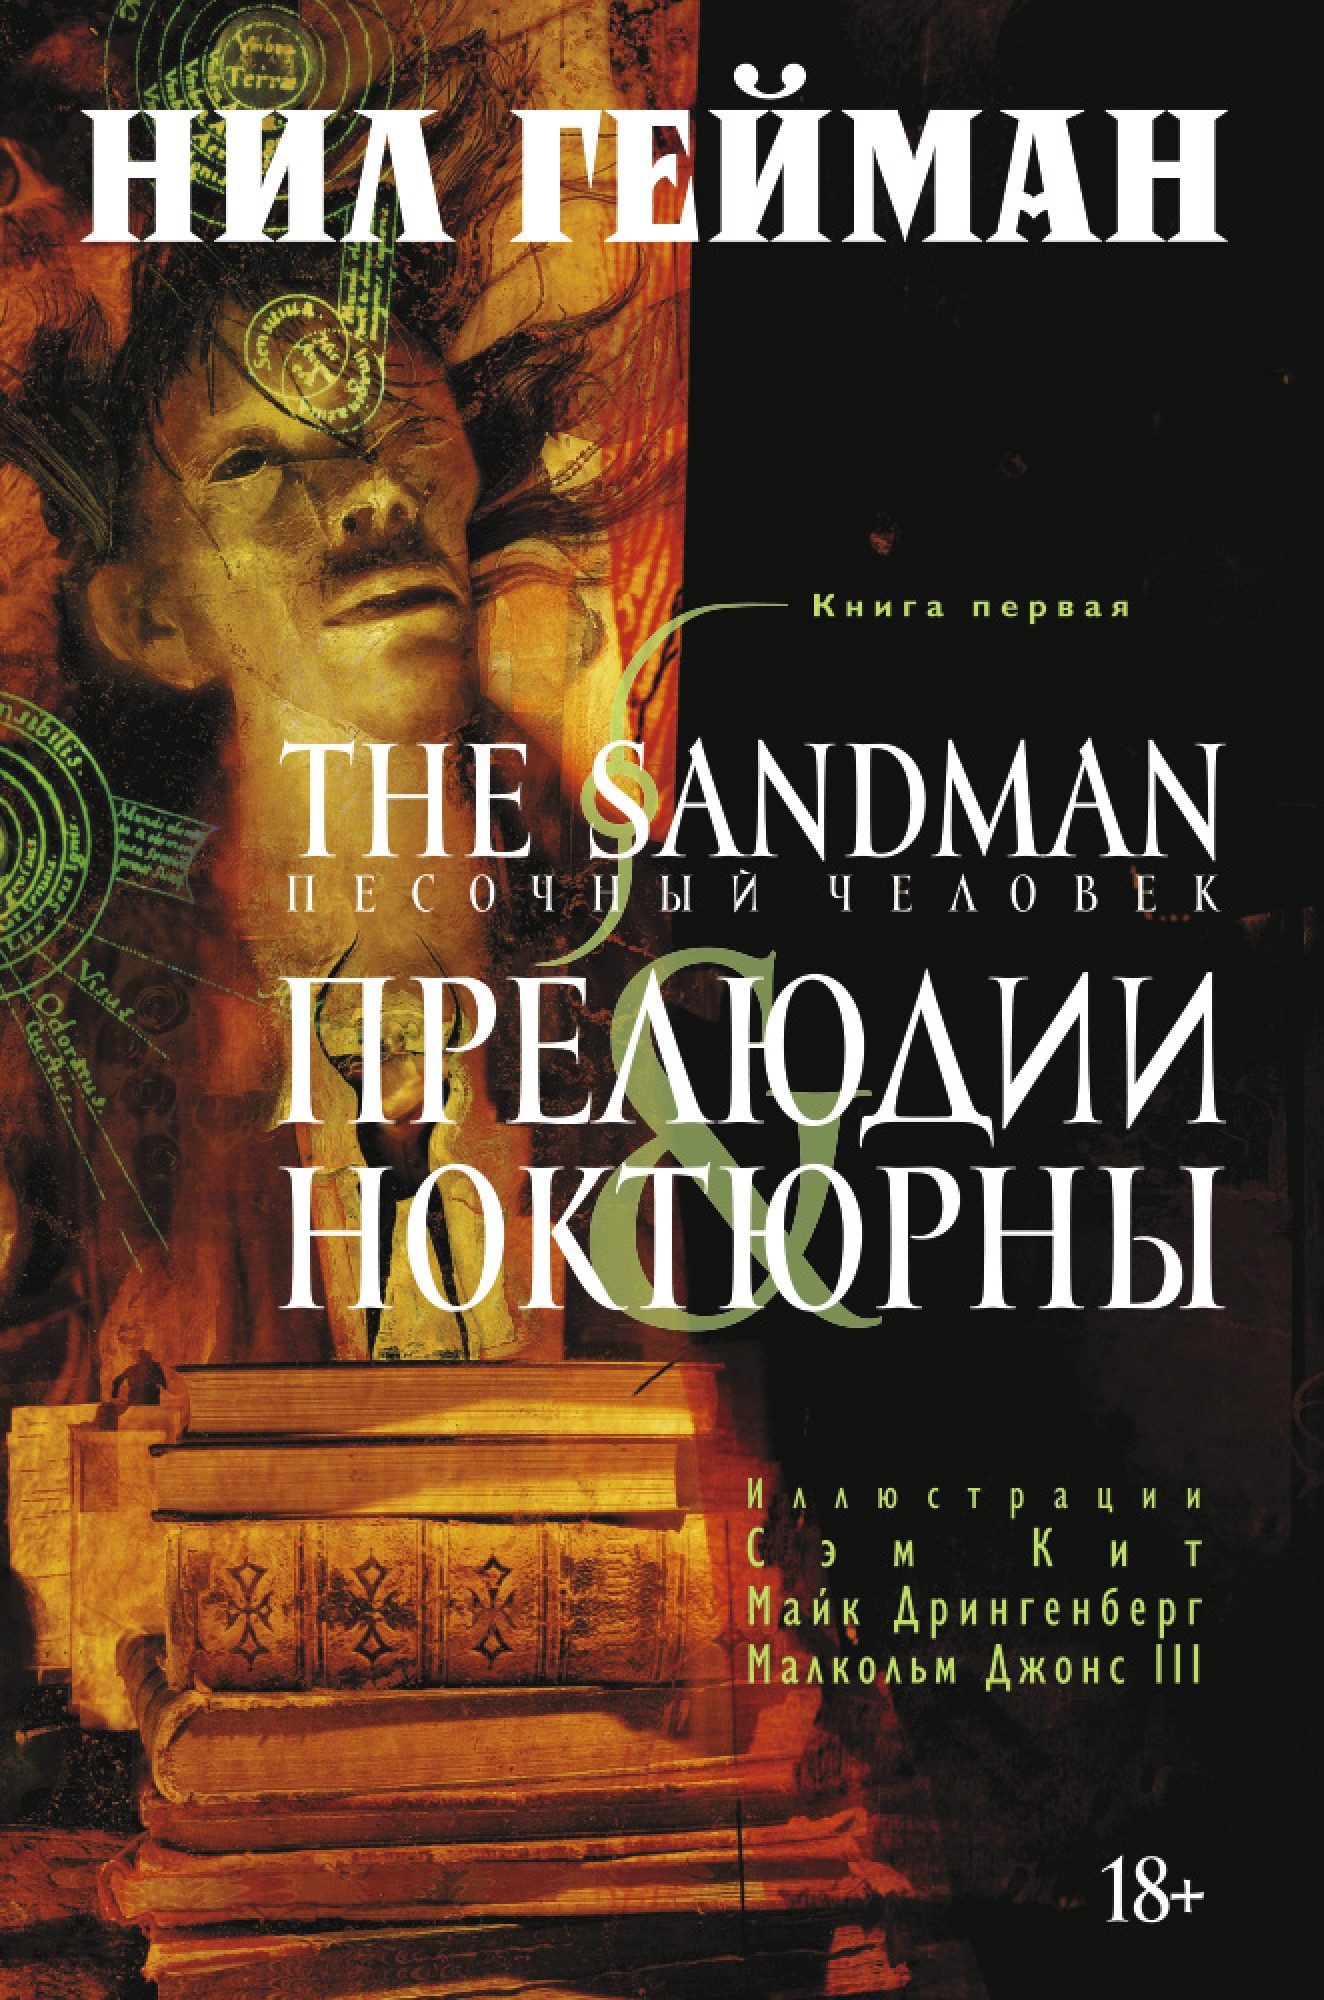 Book “The Sandman. Песочный человек. Книга 1. Прелюдии и ноктюрны” by Нил Гейман — 2020